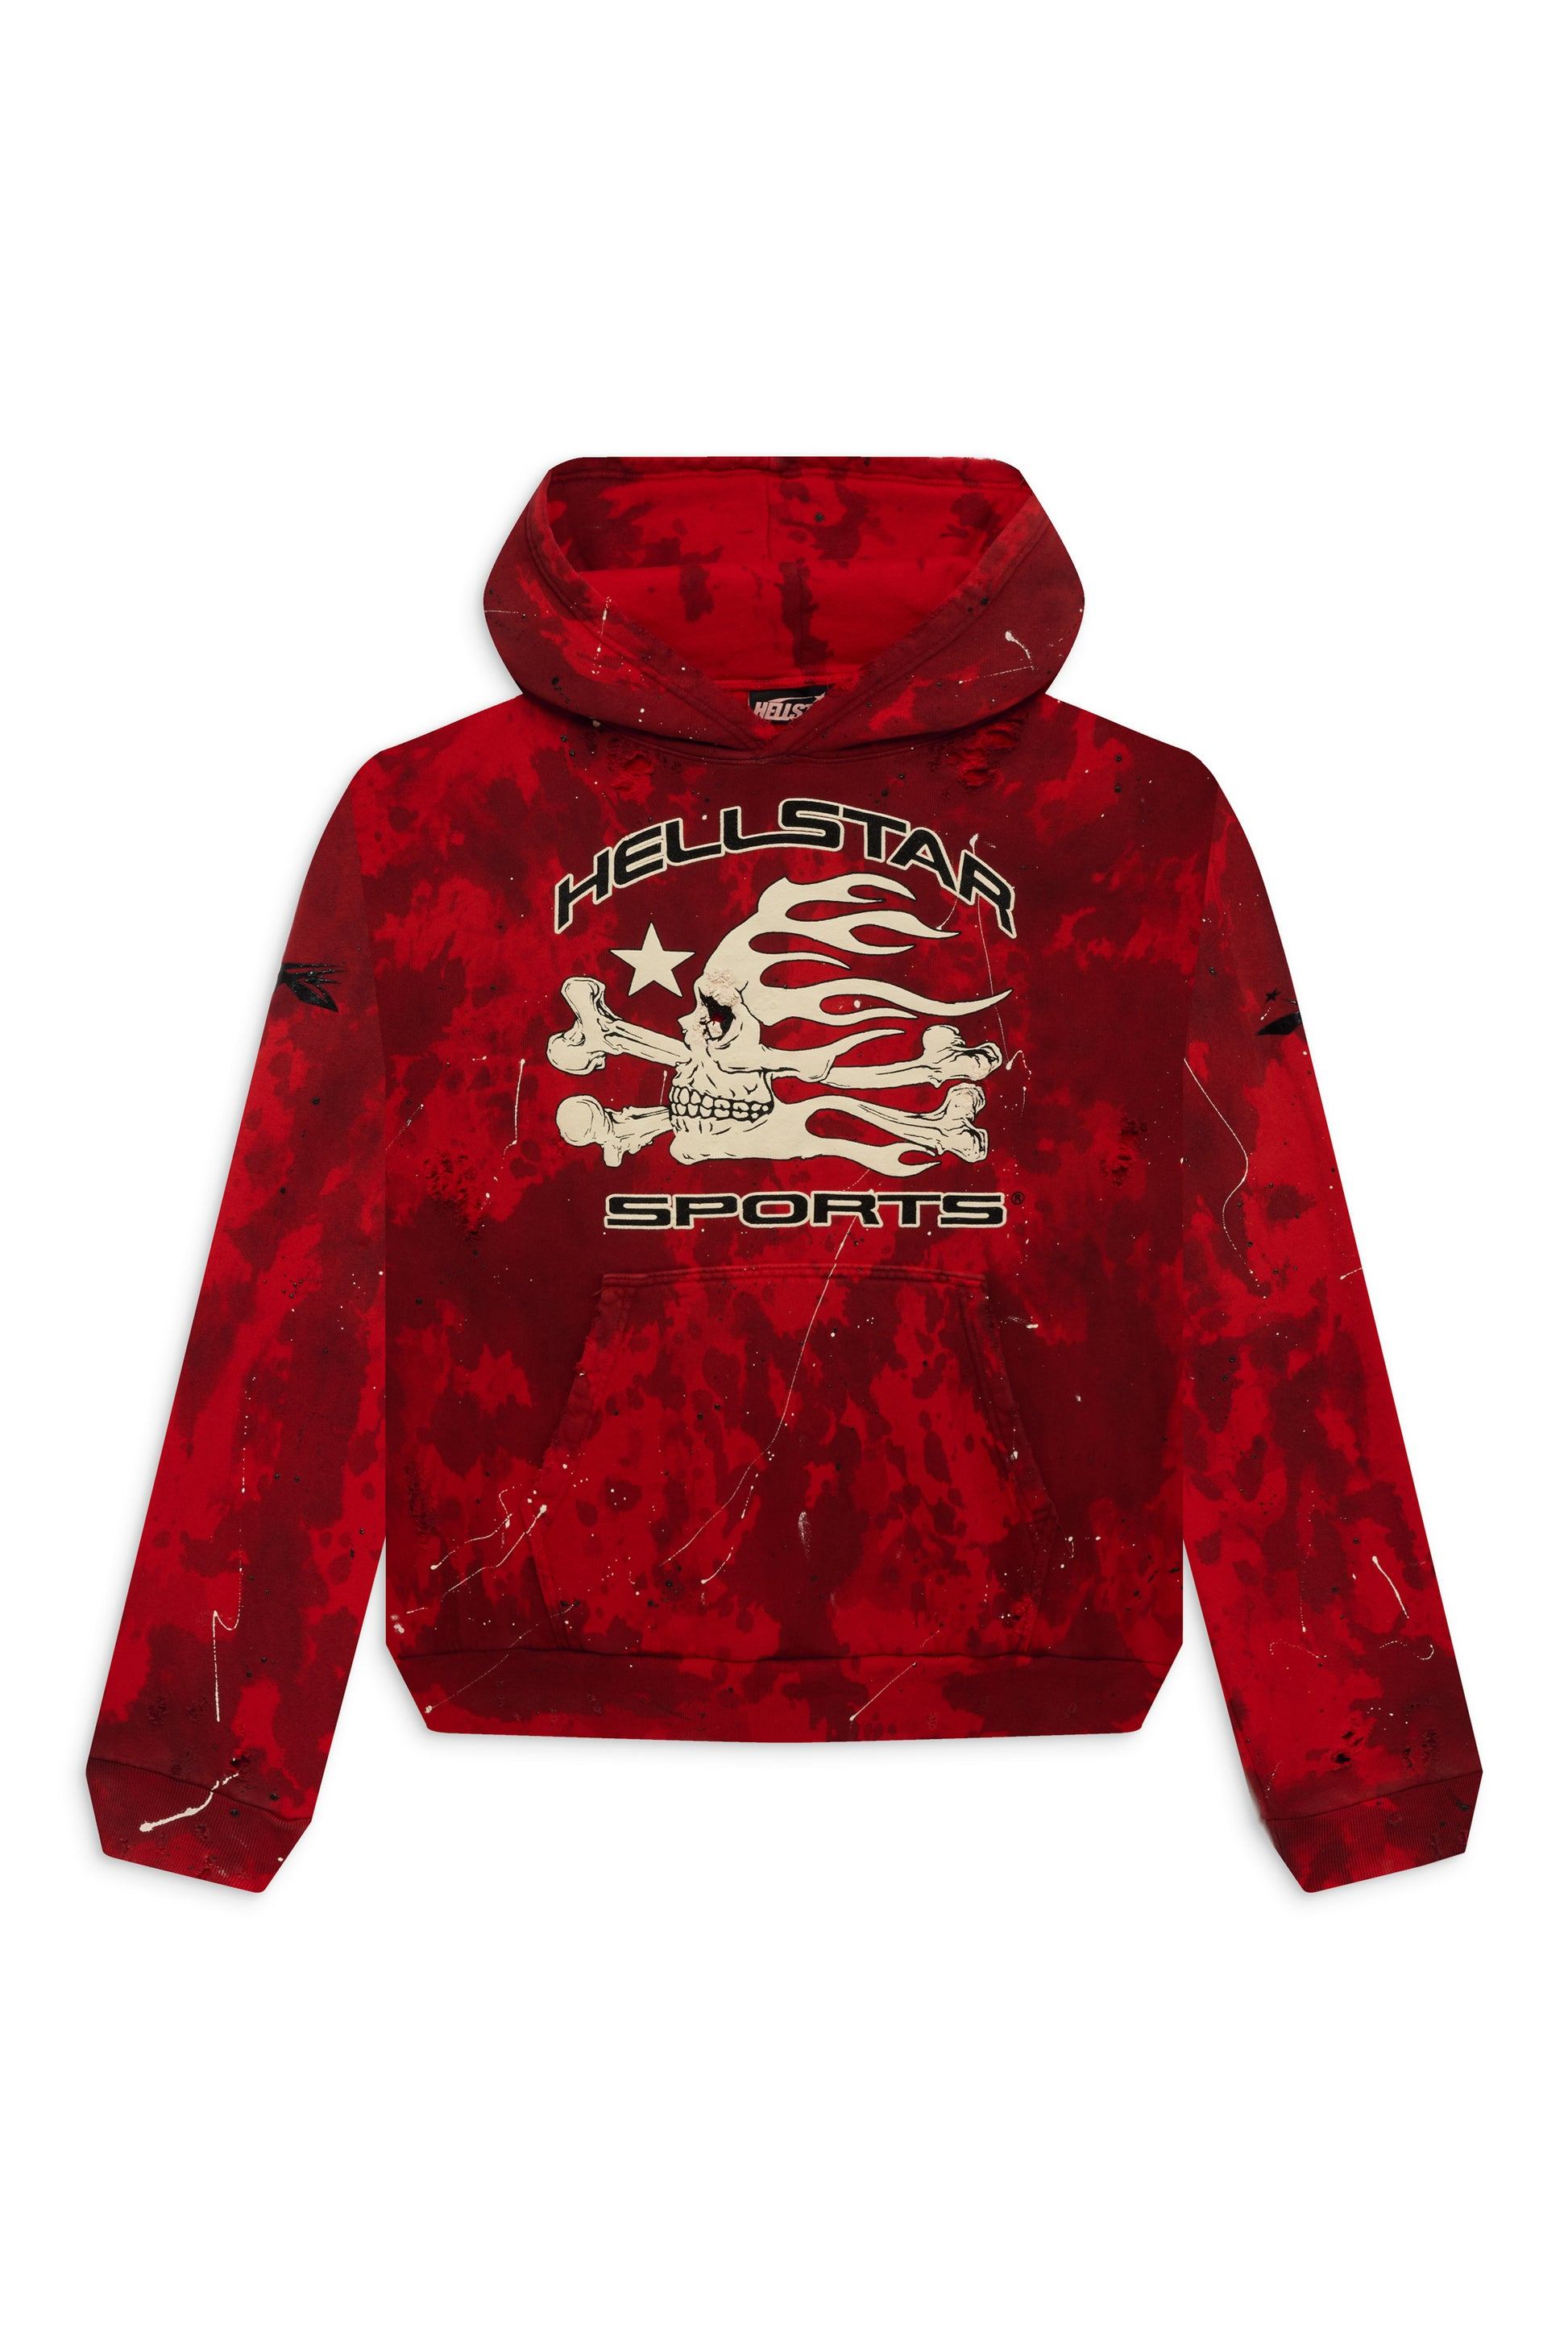 Hellstar || Official Hellstar Clothing Store - UPTO 35% OFF